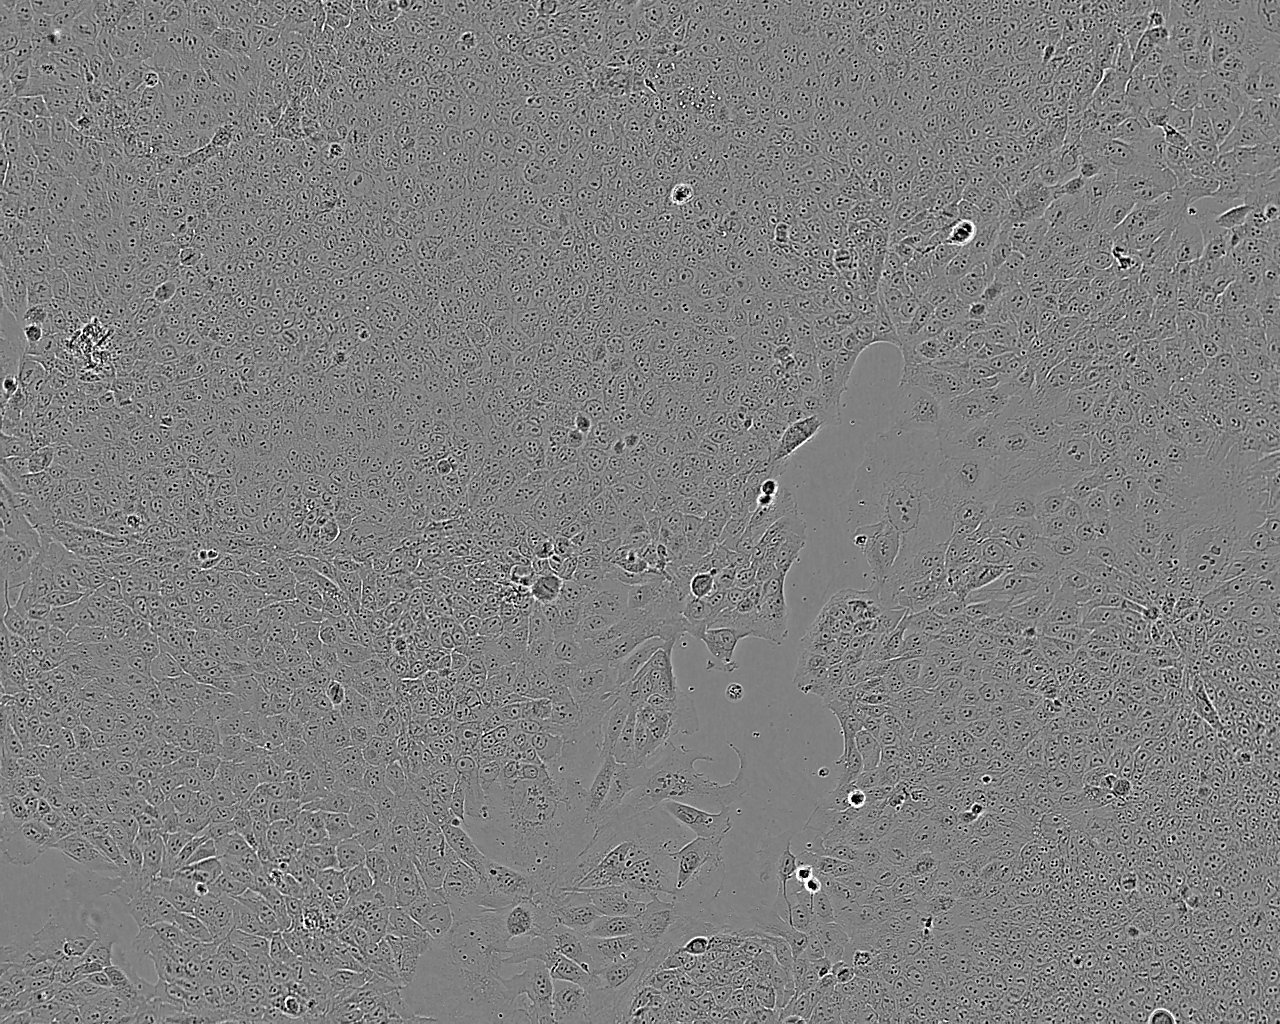 NCI-H676B Cell:人肺腺癌细胞系,NCI-H676B Cell